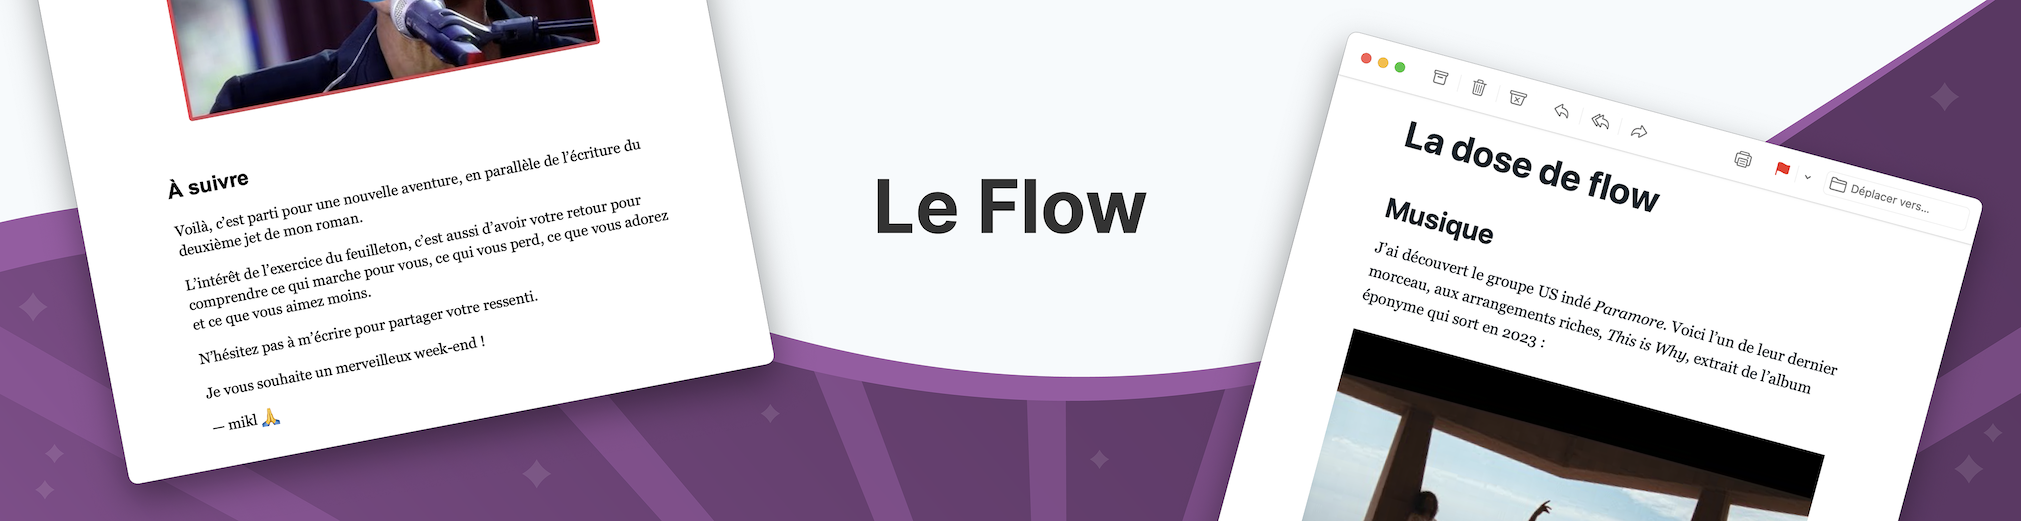 Le Flow